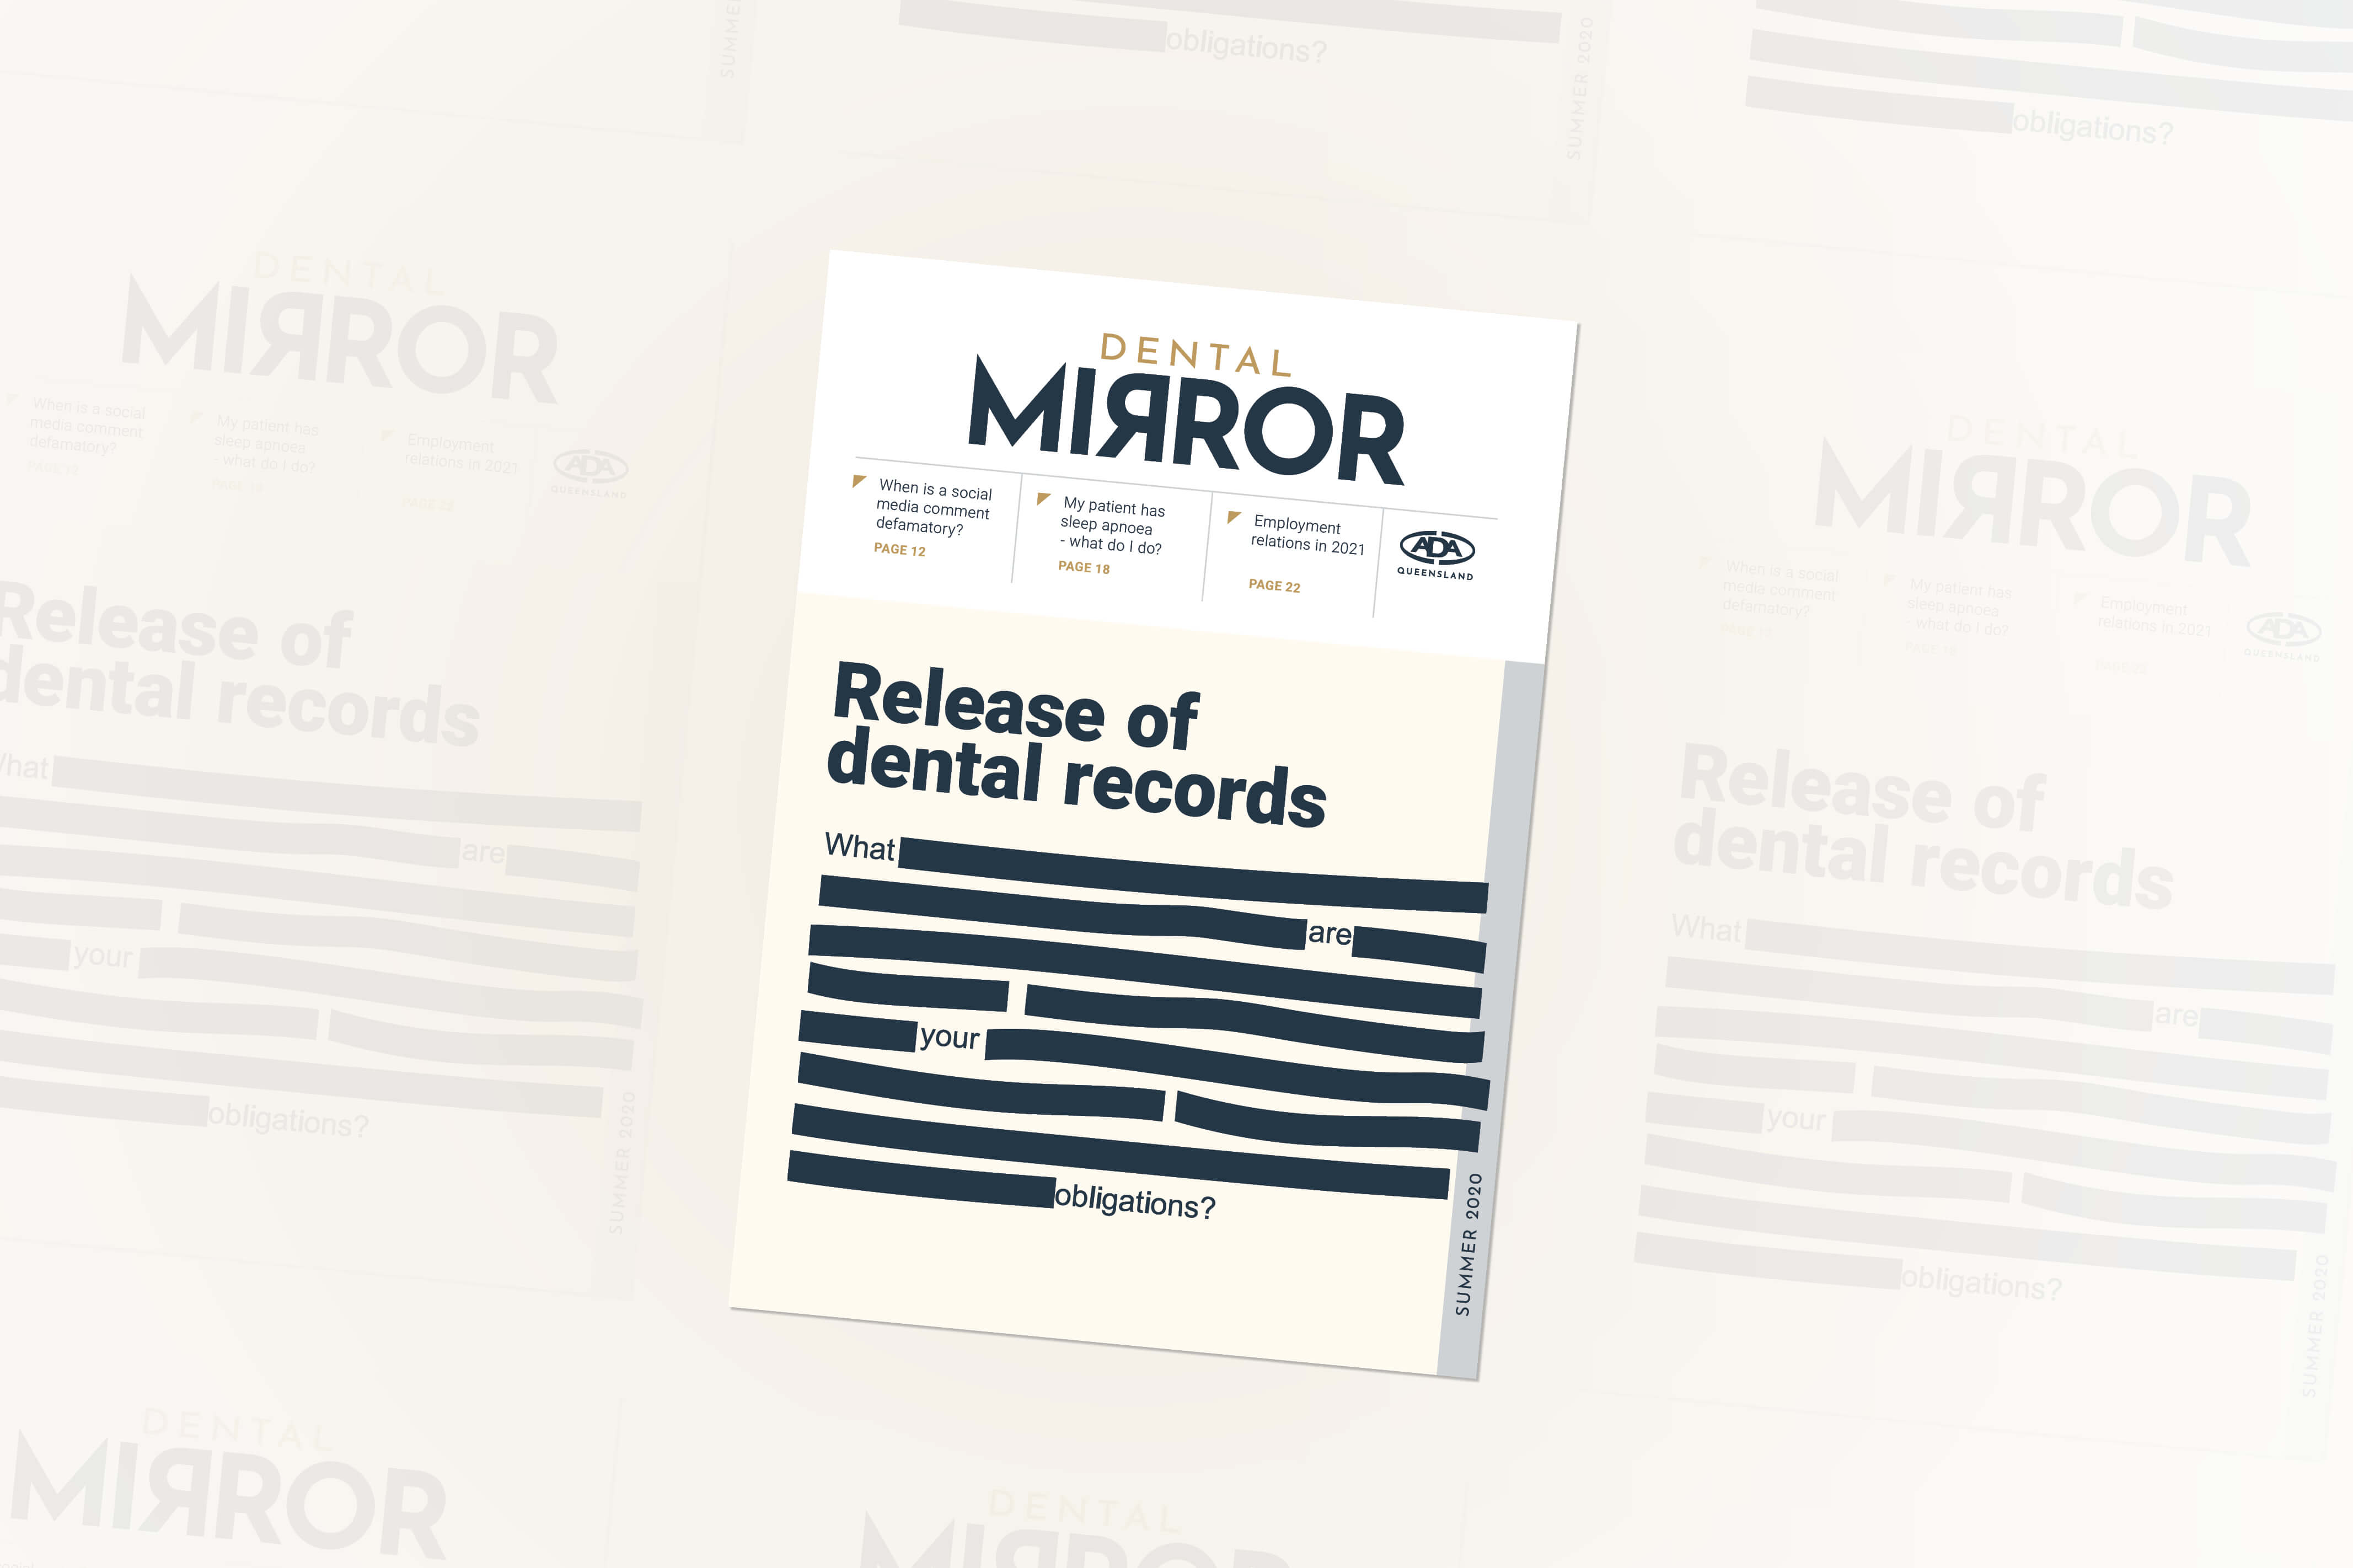 Dental Mirror Magazine